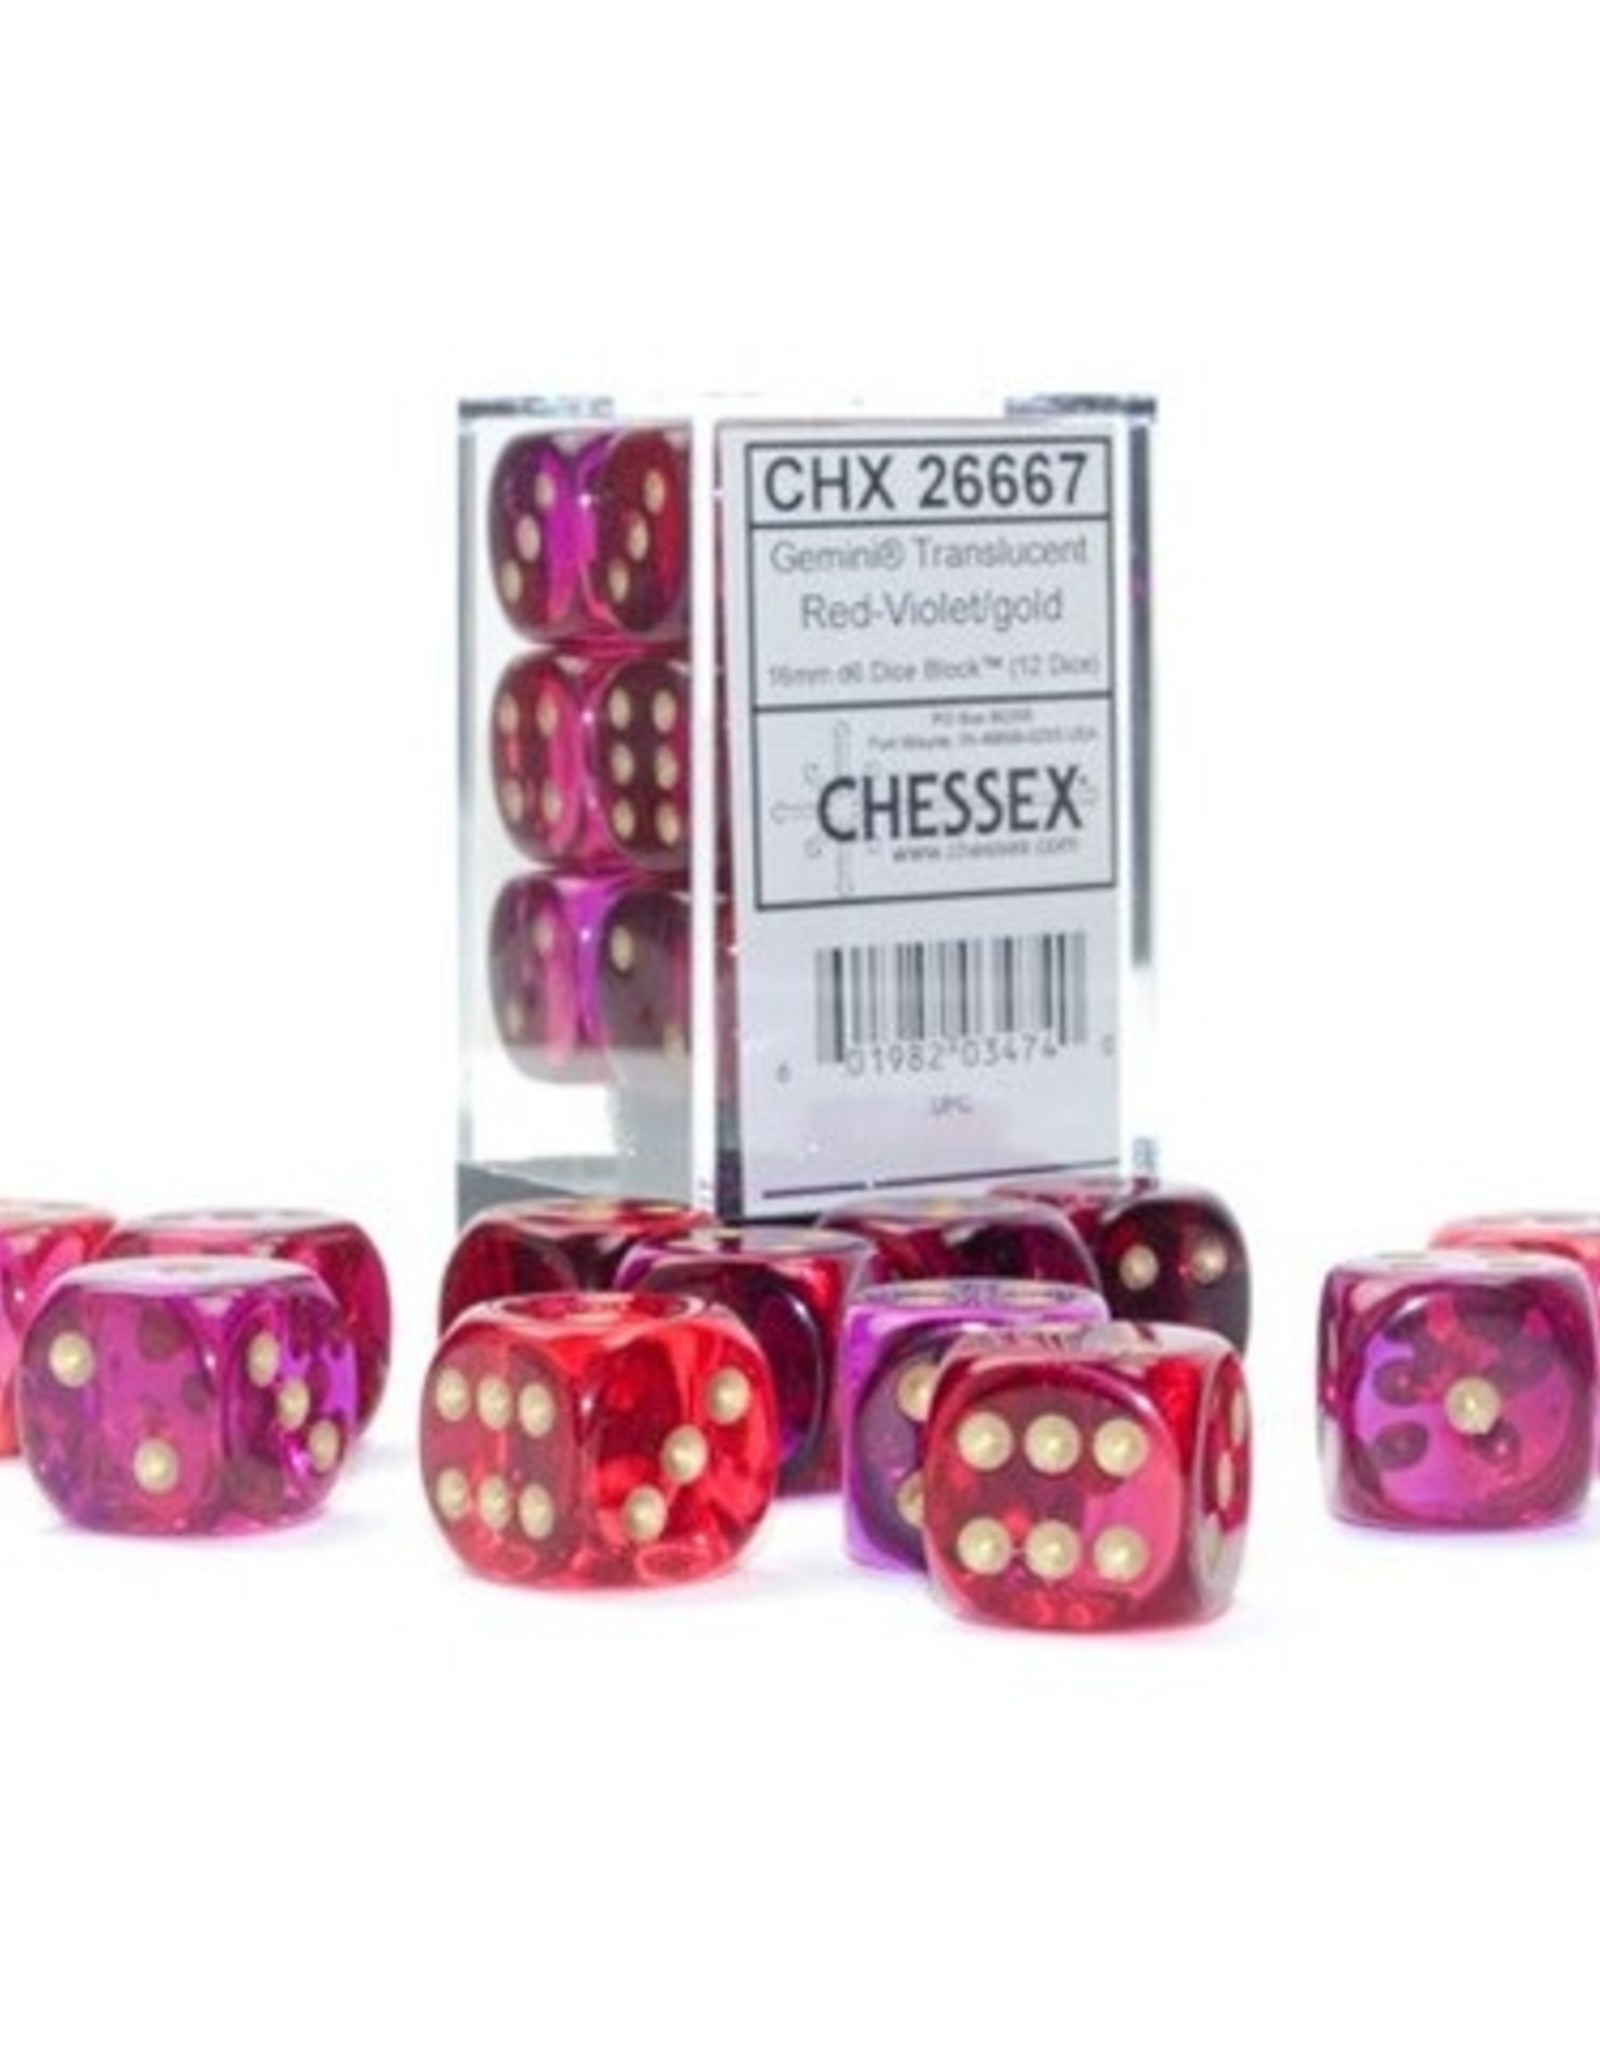 Chessex Dice - 12D6 Gemini Translucent Red-Violet/Gold Dice Block